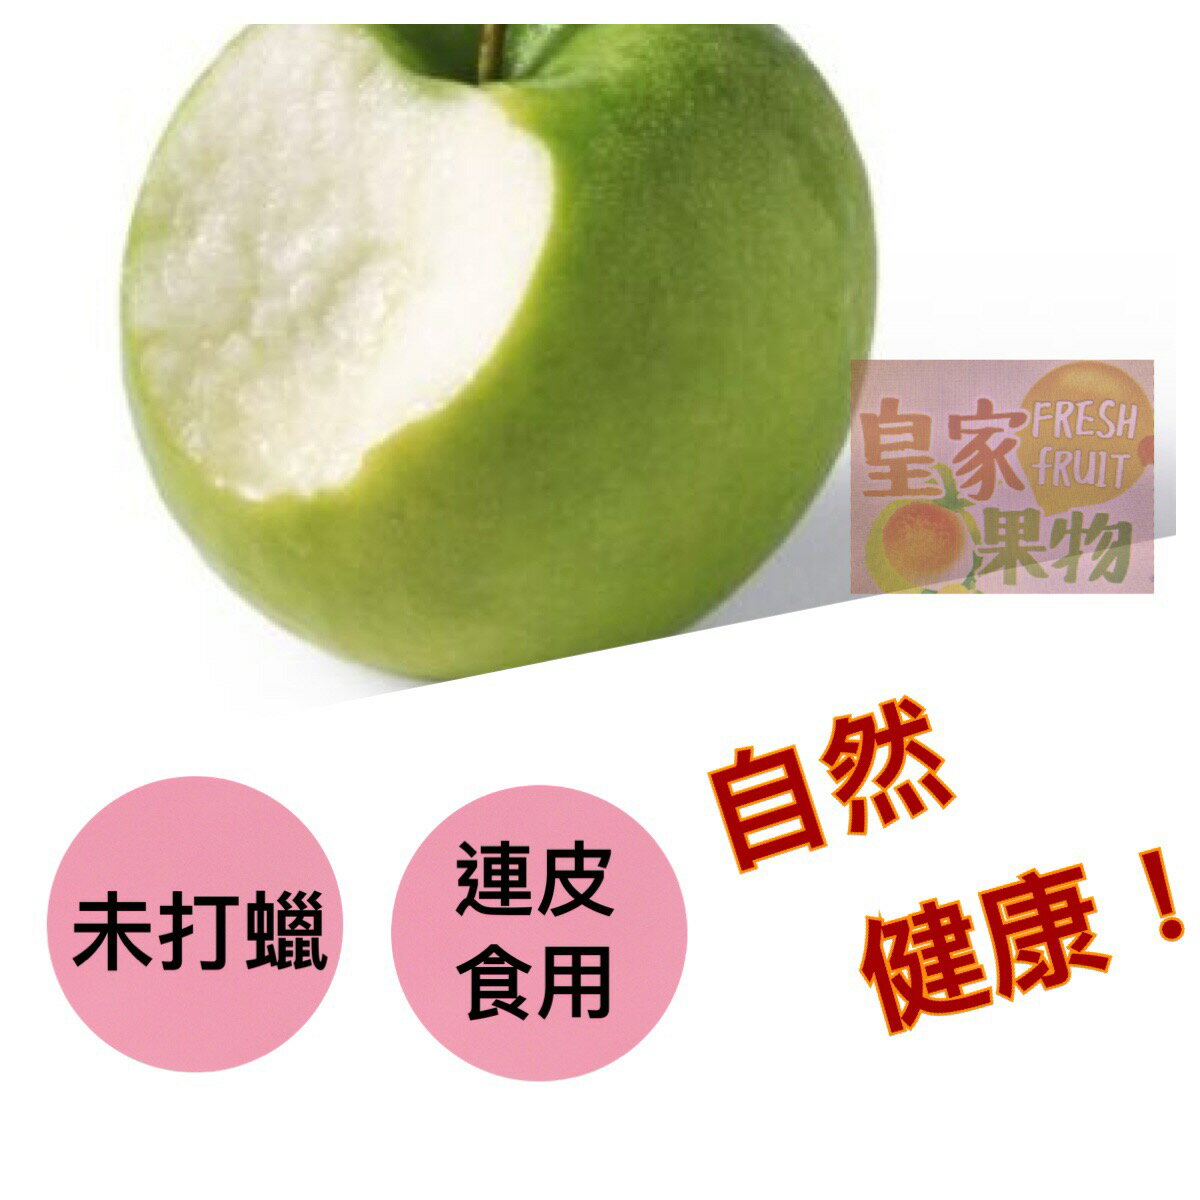 梨山青龍蘋果30入【皇家果物】免運